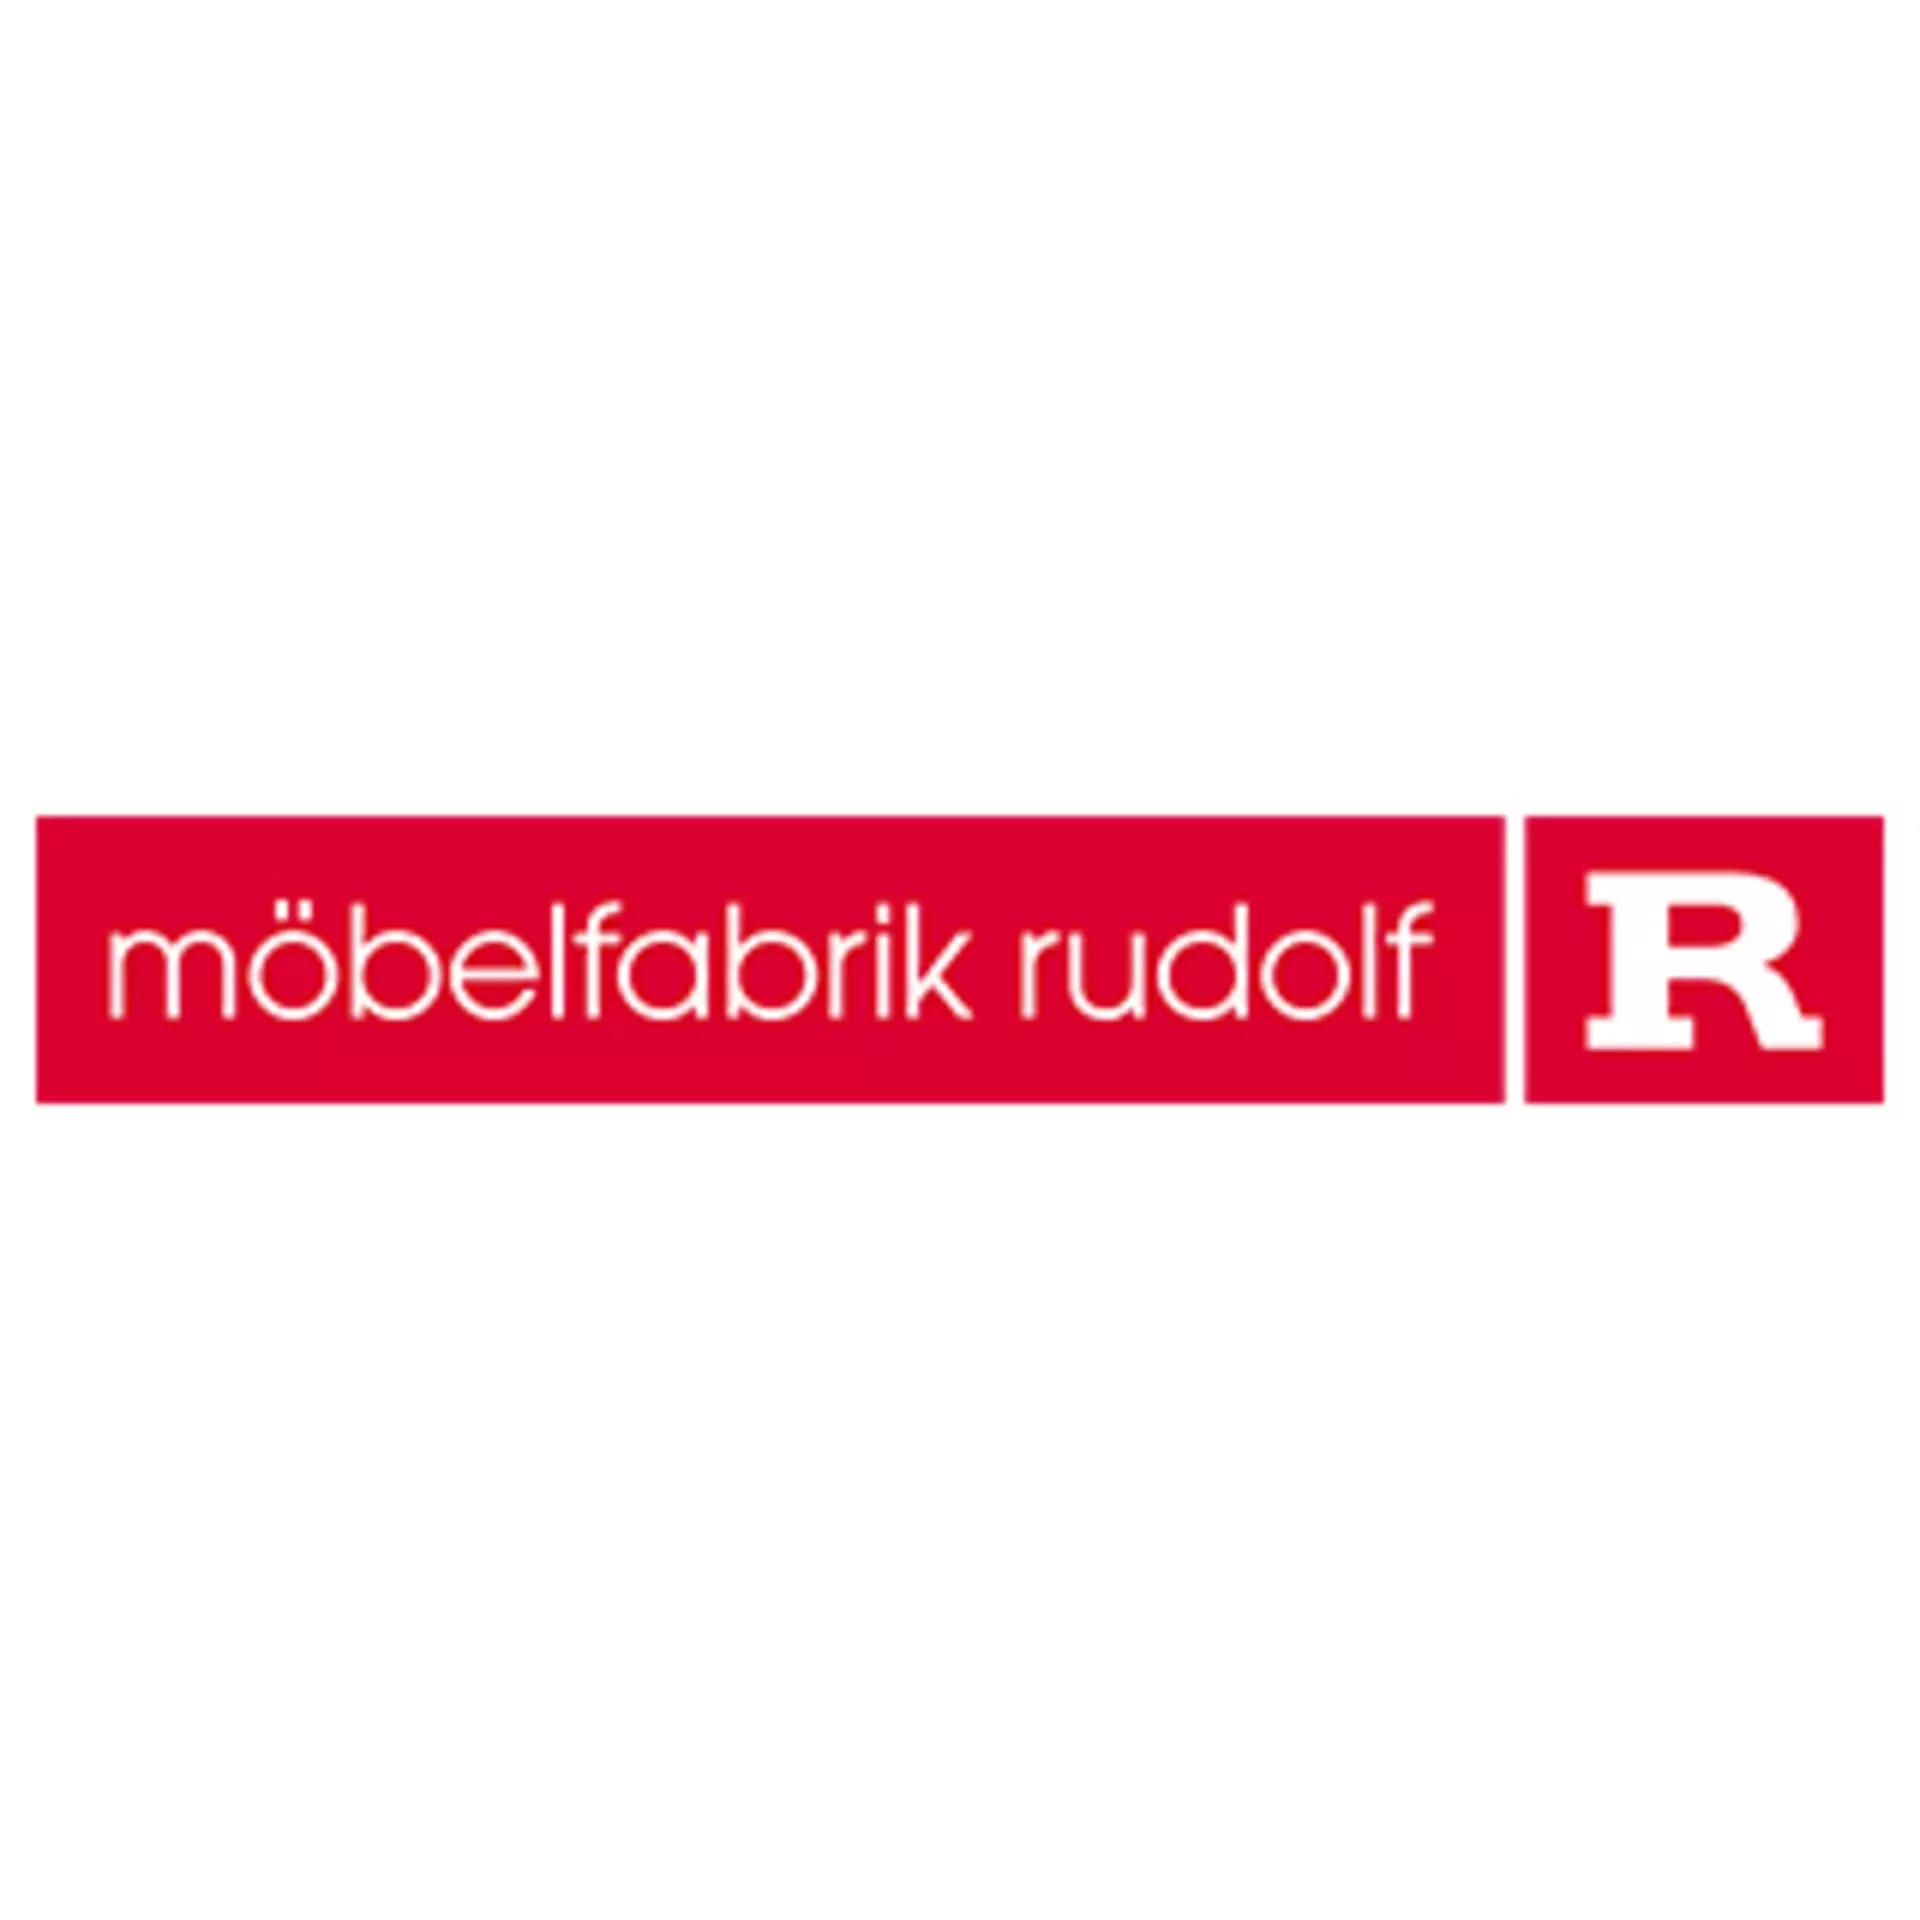 Logo möbelfabrik rudolf